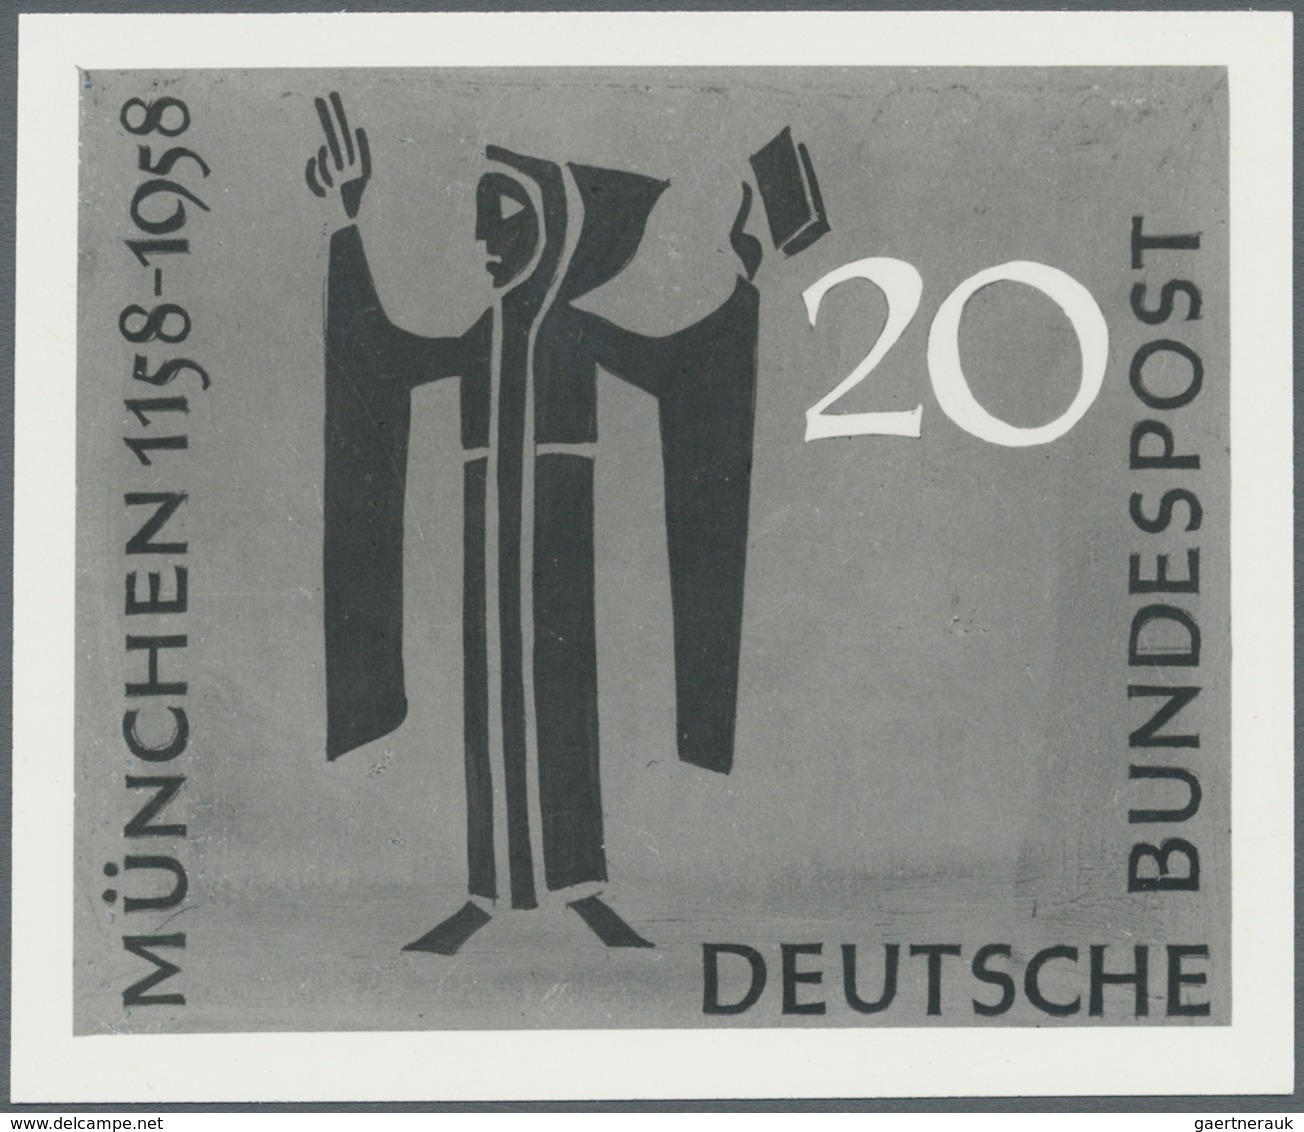 25041 Thematik: Feste, Jubiläen / festivals, anniversary: 1915/1998 (approx), various countries. Accumulat